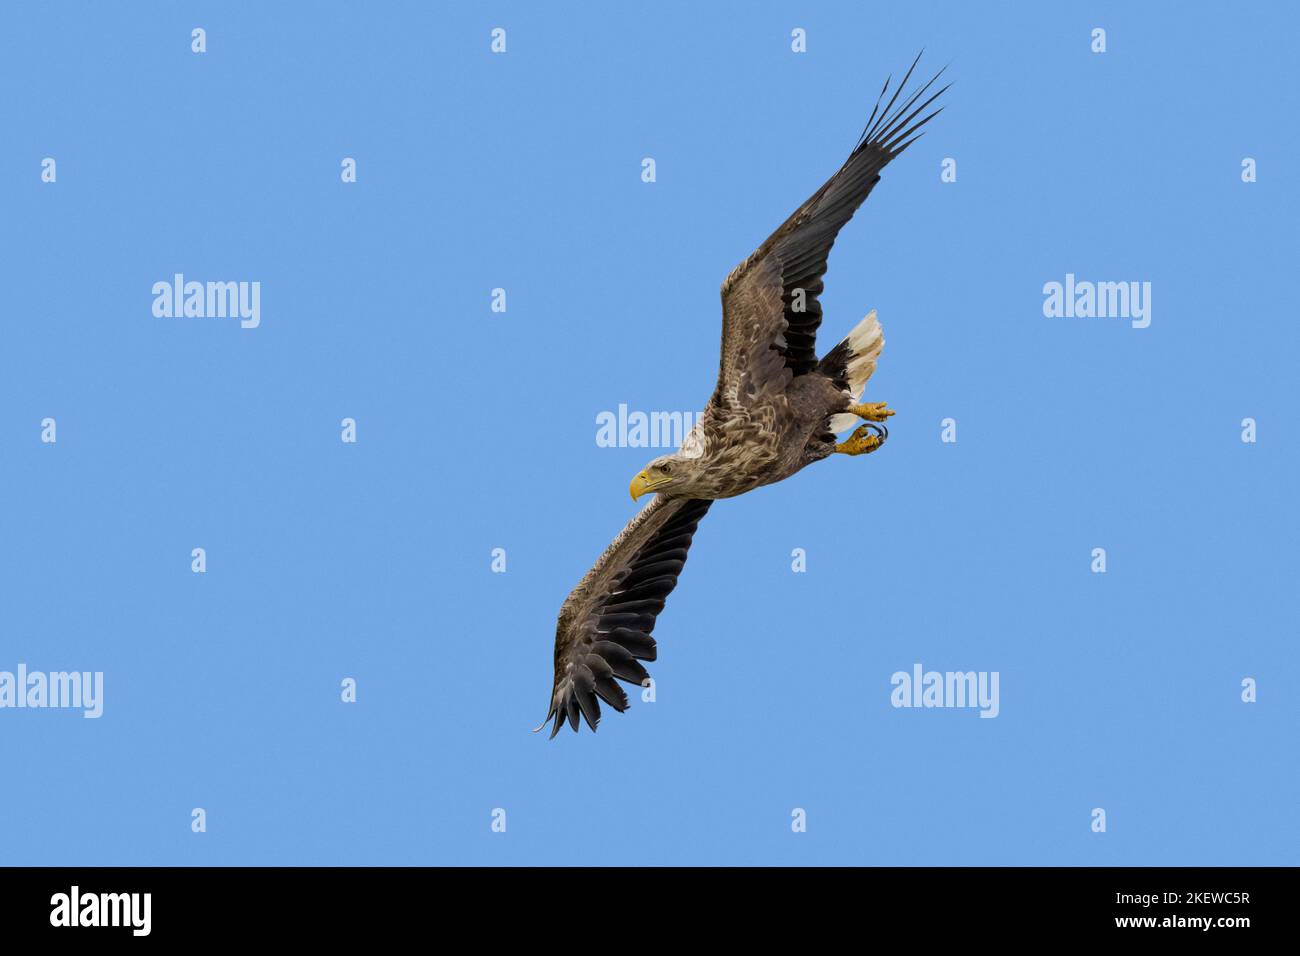 Águila de cola blanca / Águila marina euroasiática / erne (Haliaeetus albicilla) adulto en vuelo buceo contra el cielo azul en verano Foto de stock